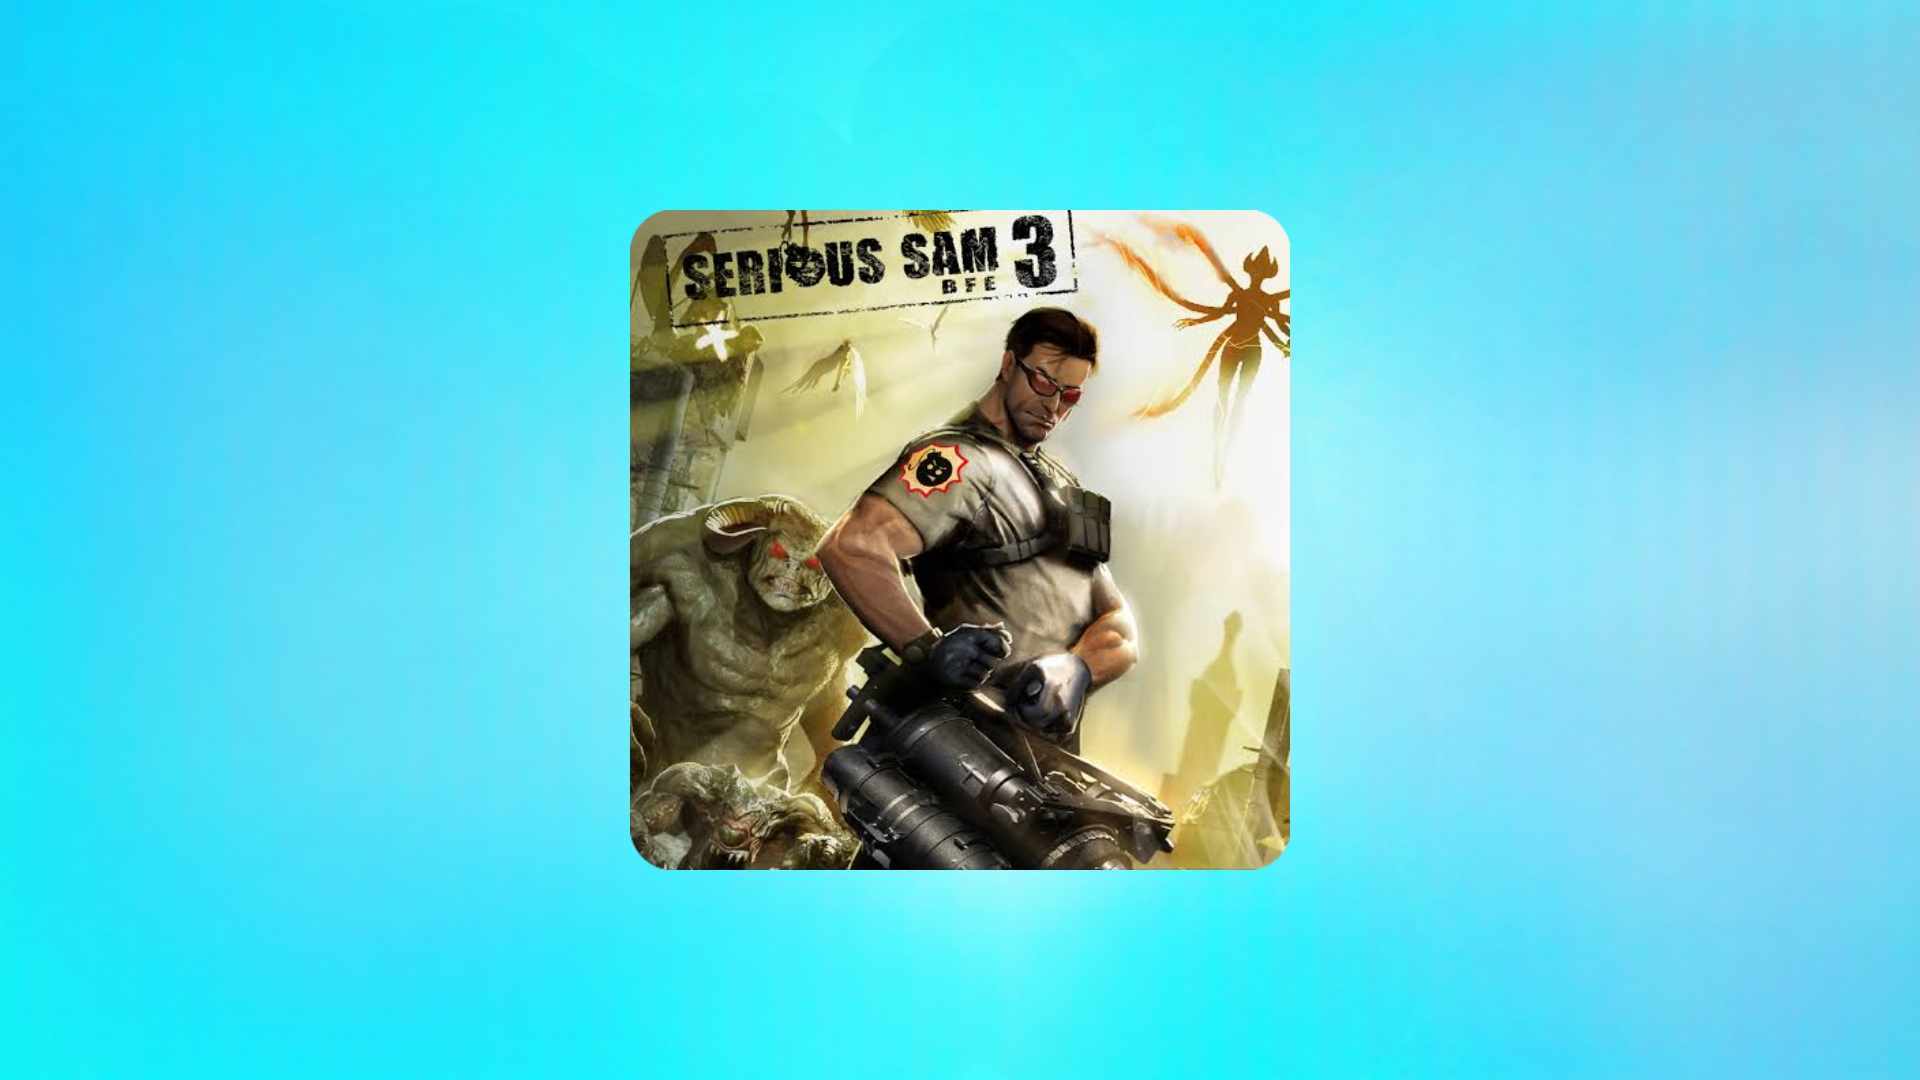 הורד את הגרסה האחרונה של המשחק Serious Sam 3 Serious Sam למחשב